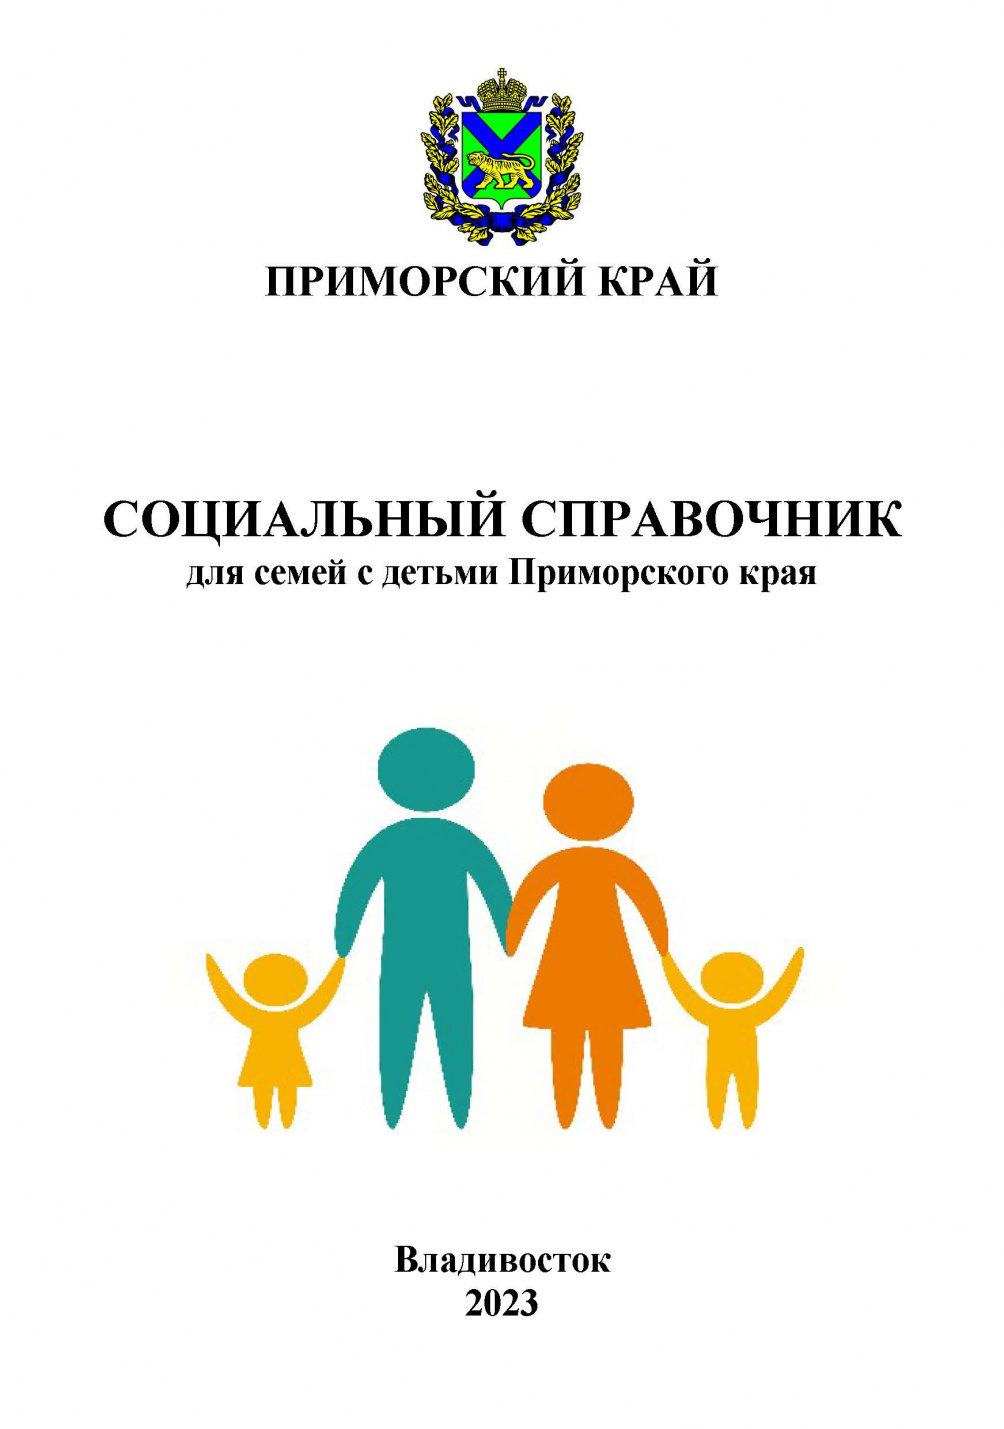 Социальный справочник для семей с детьми в Приморском крае